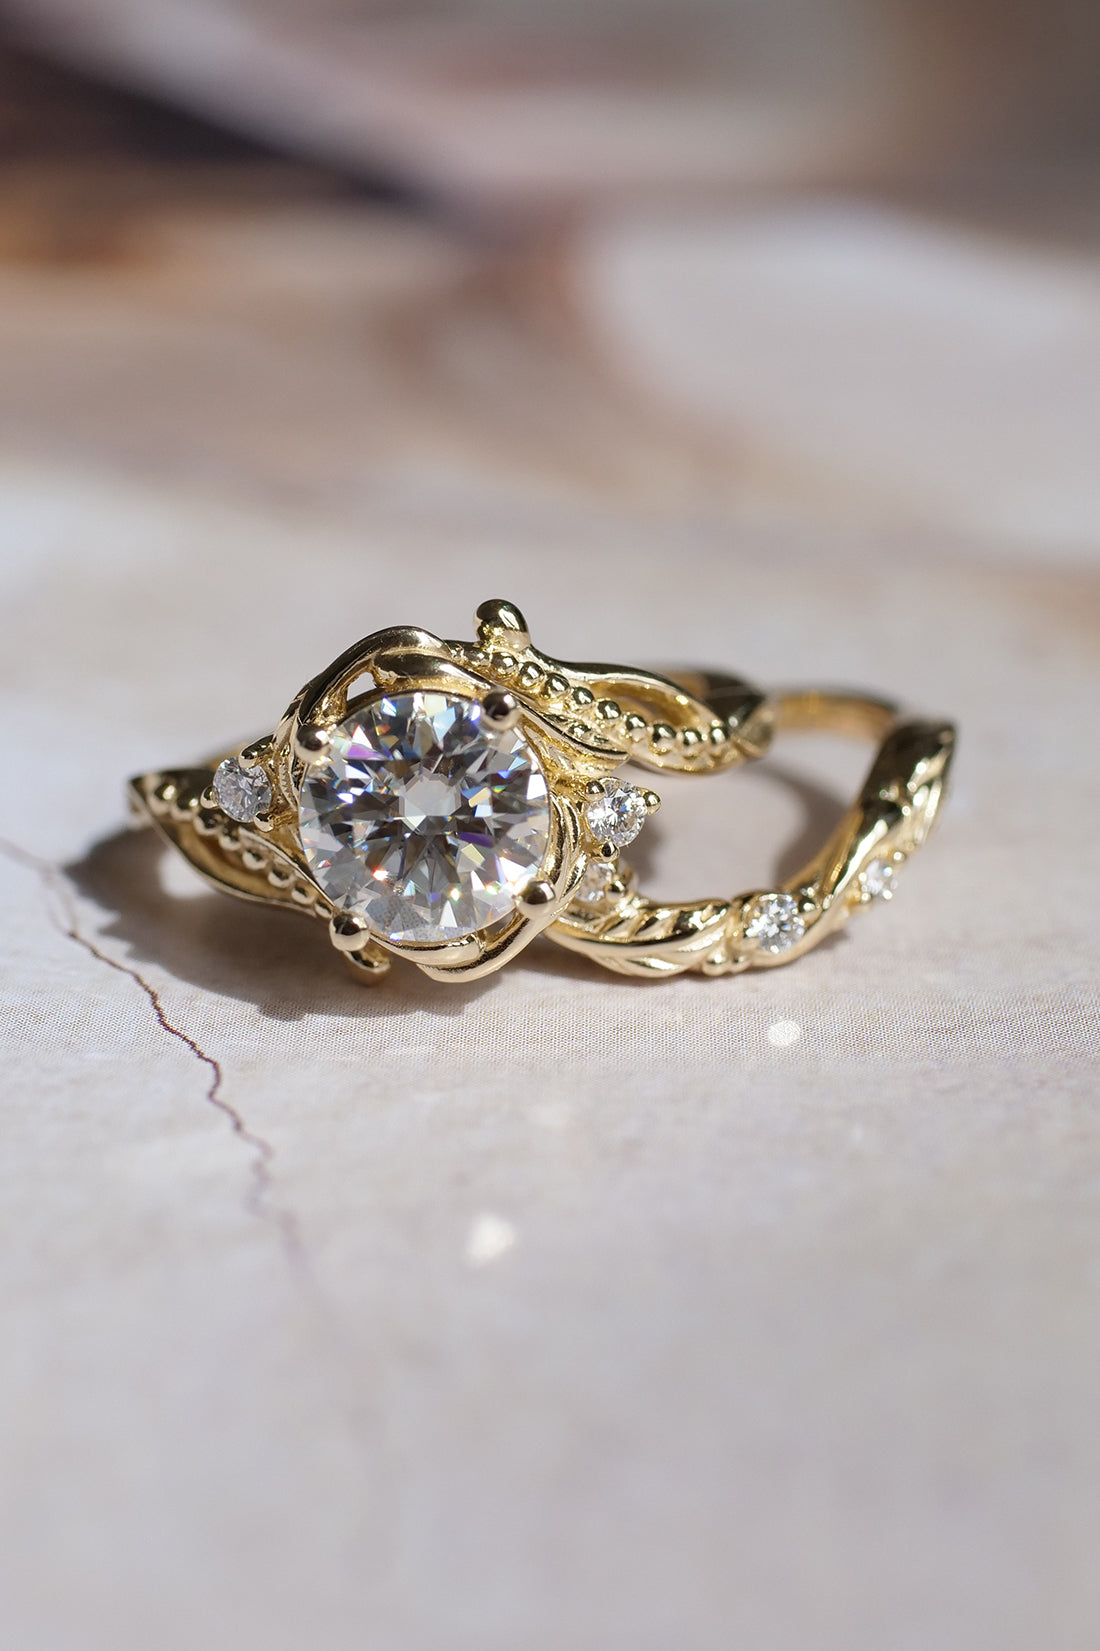 1.5 ct moissanite engagement ring, wedding ring set